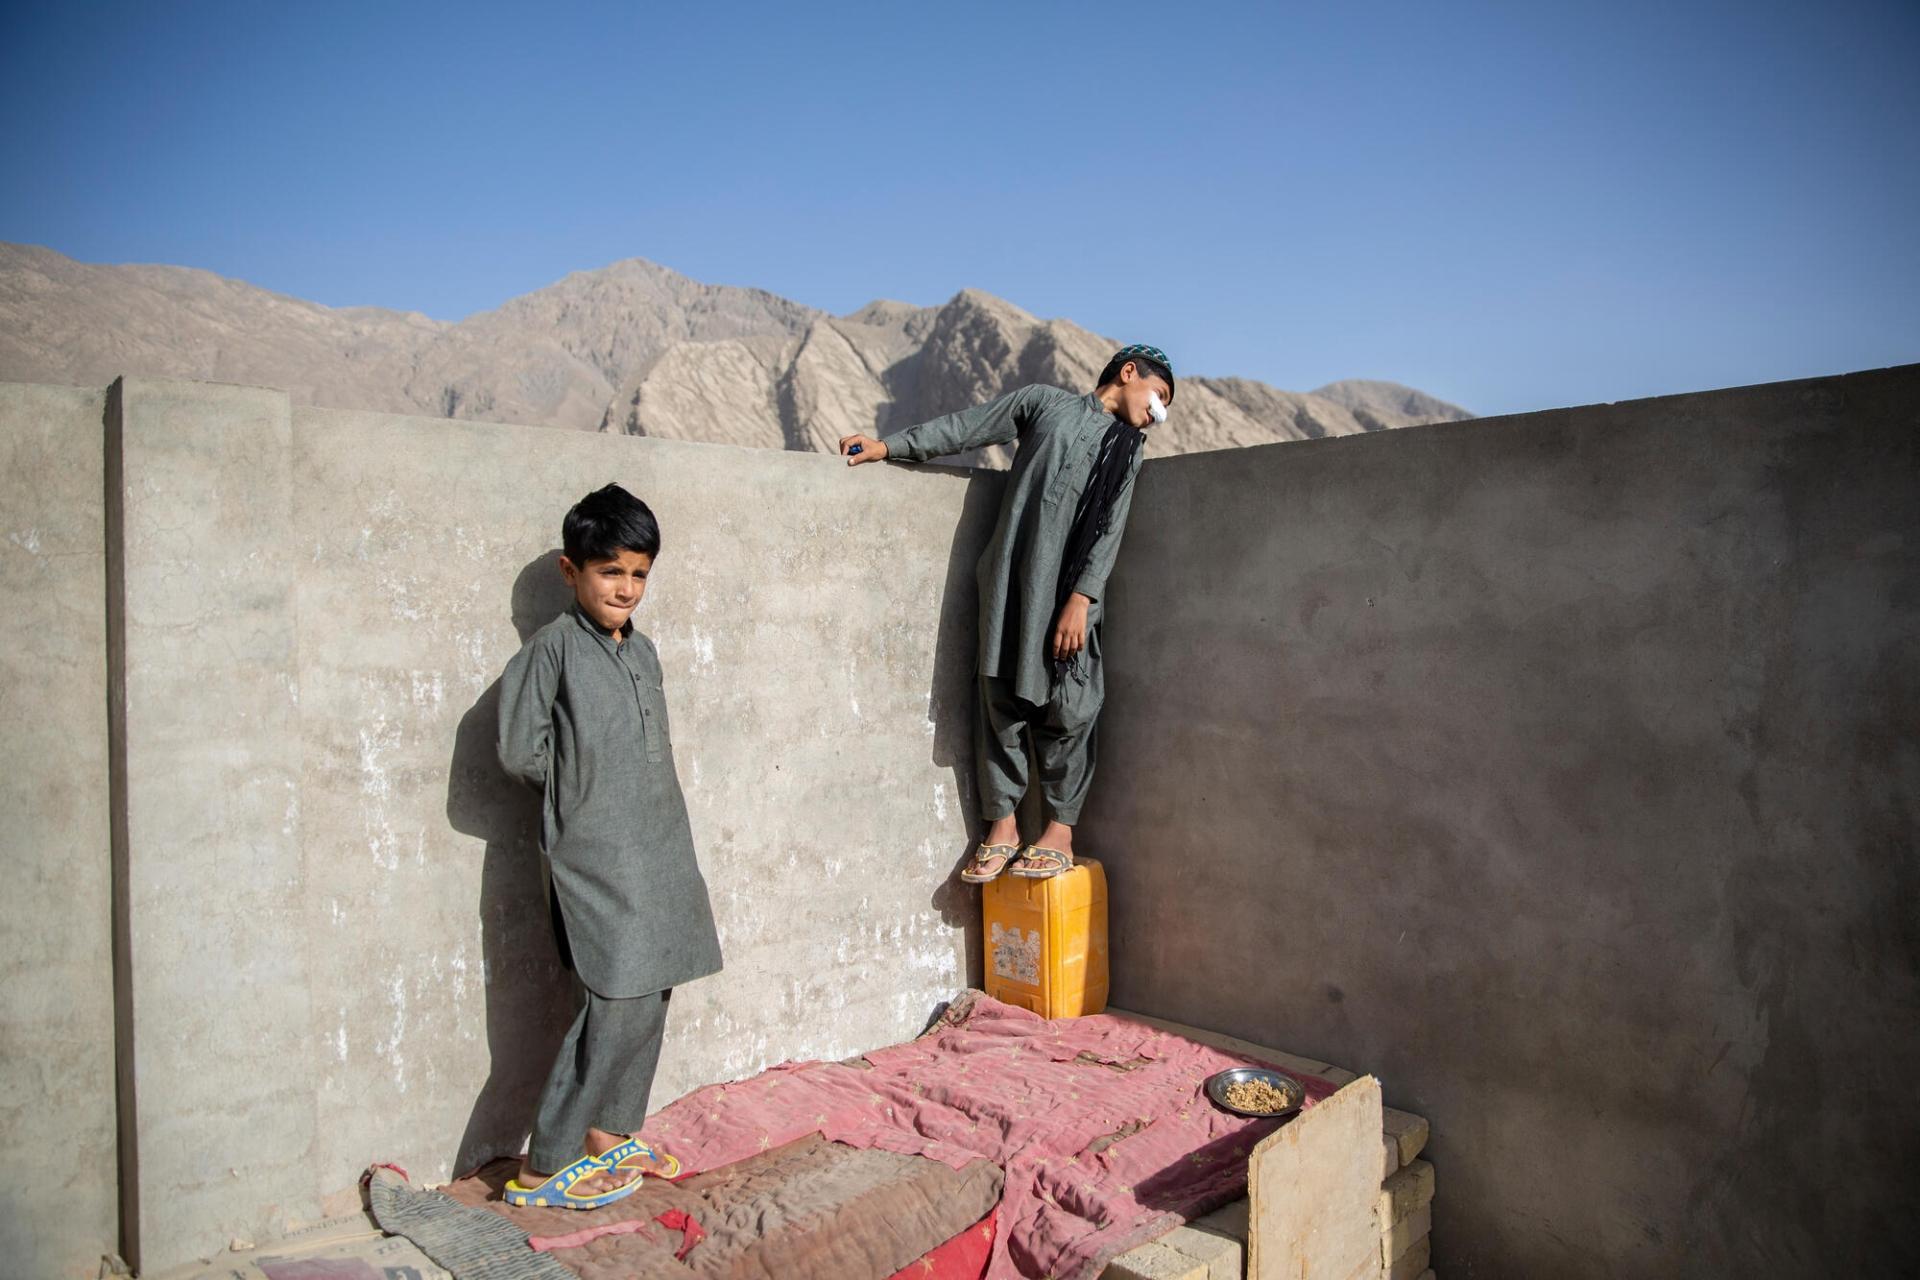 Idris (droite) joue avec son petit frère Mohammad (gauche) sur le toit de leur maison de Quetta. Le garçon de dix ans souffre de leishmaniose cutanée, pour laquelle il est soigné à la clinique MSF de l’hôpital Benazir Bhutto. Pakistan, mai 2022